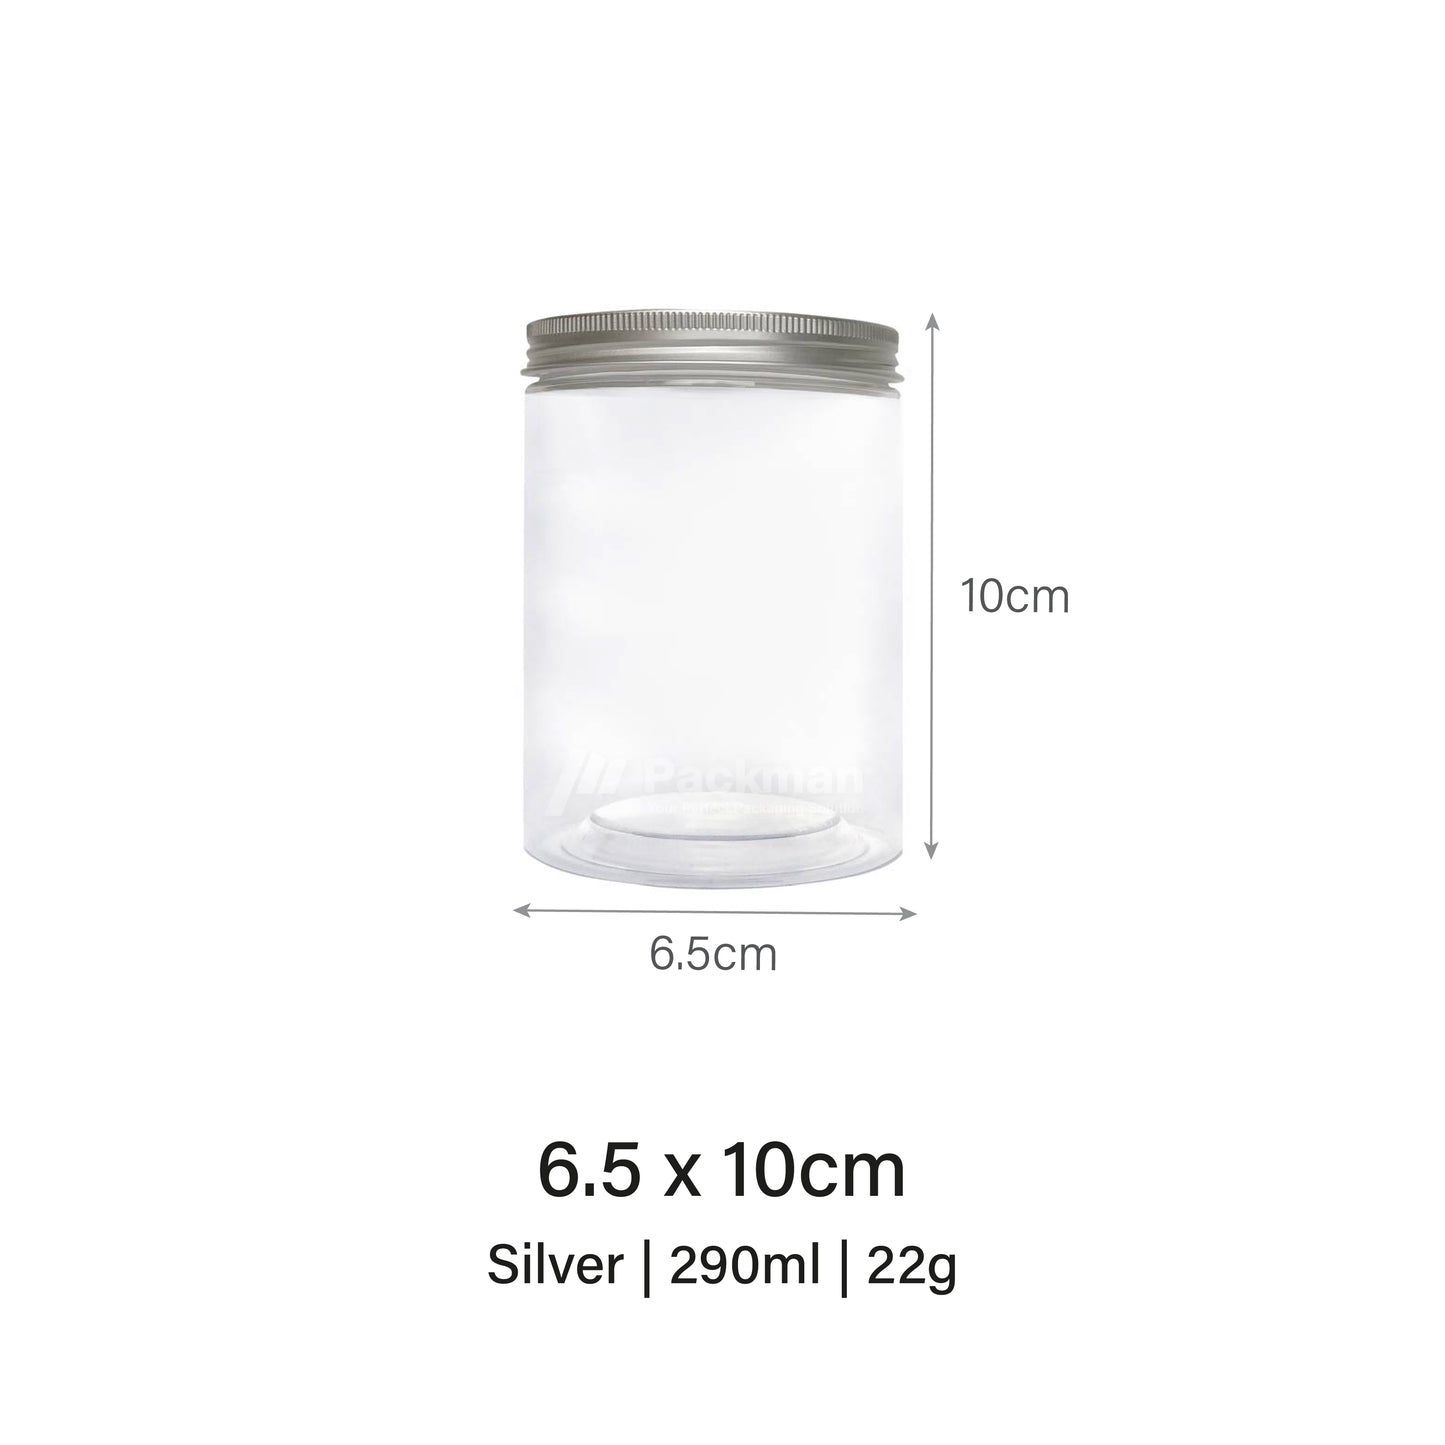 6.5 x 10cm Silver Plastic Jar (113pcs)